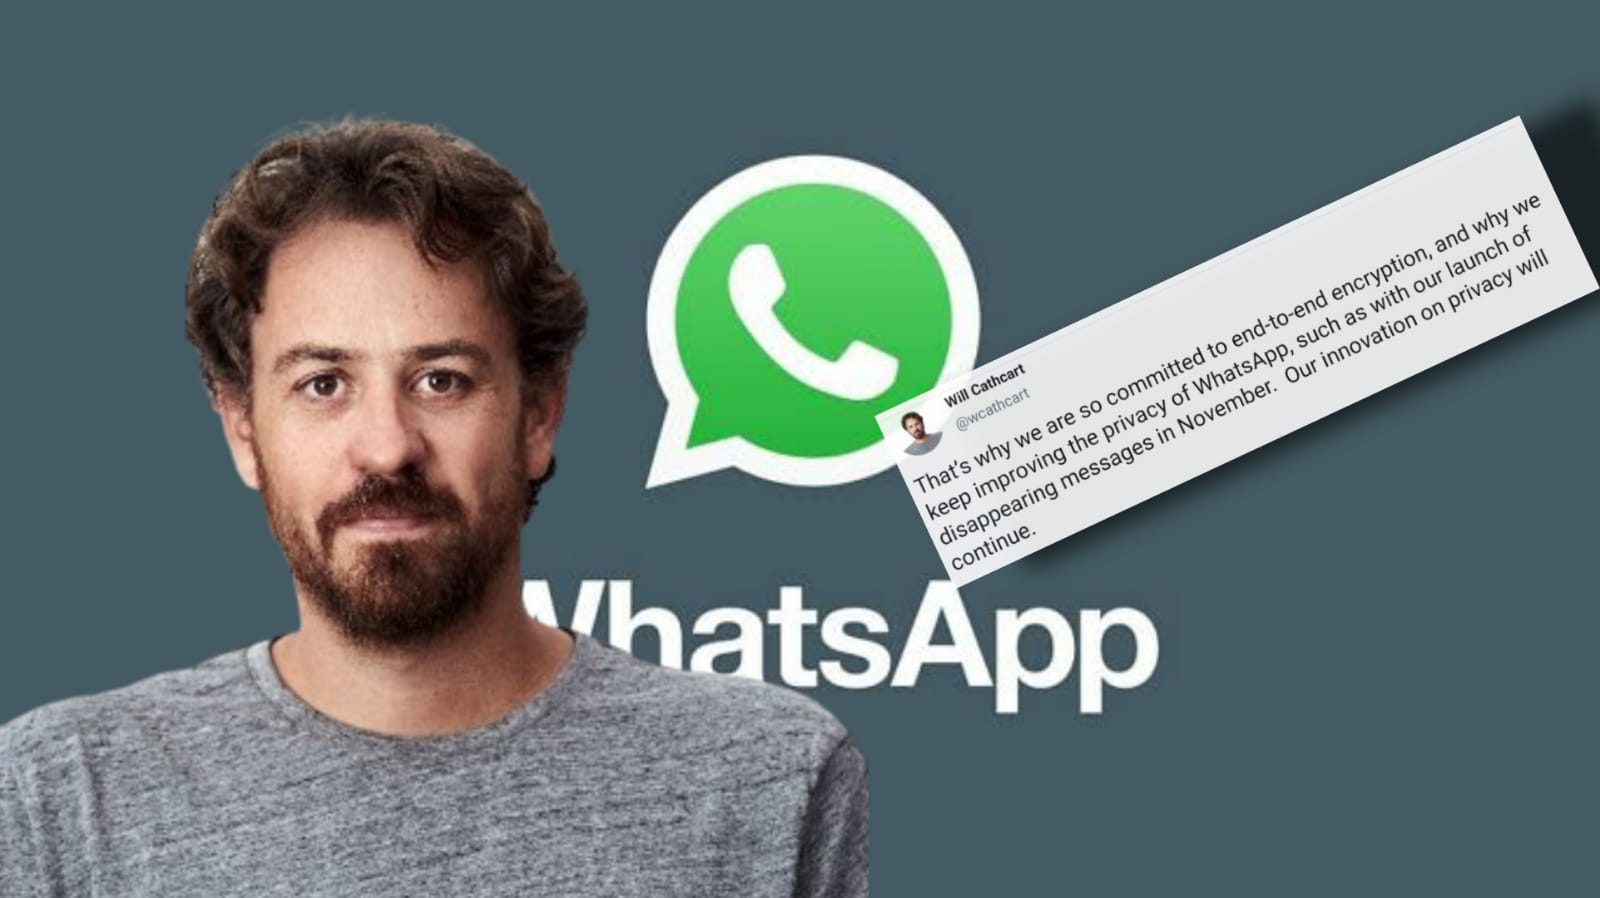 WhatsApp'ın CEO'sundan açıklama: Verilerinizi paylaşmayacağız